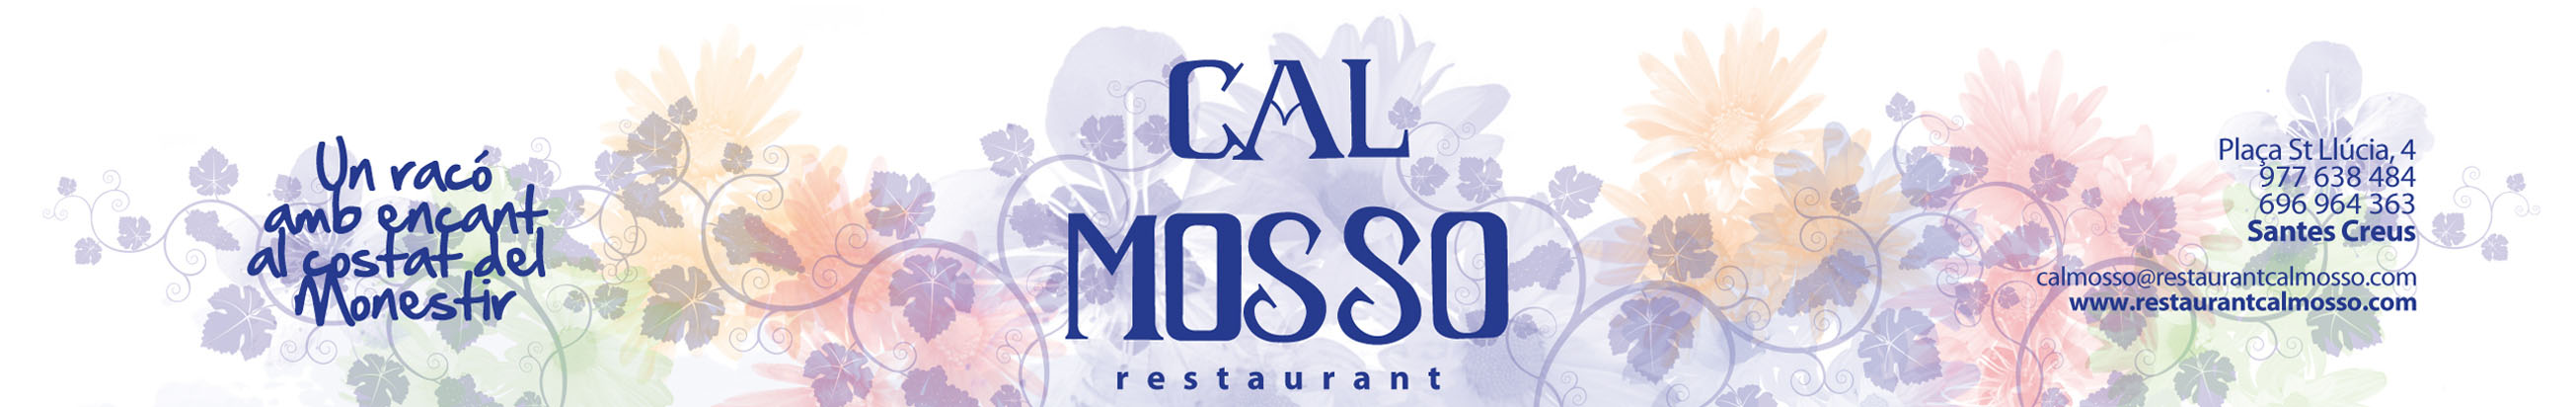 Restaurant Cal Mosso